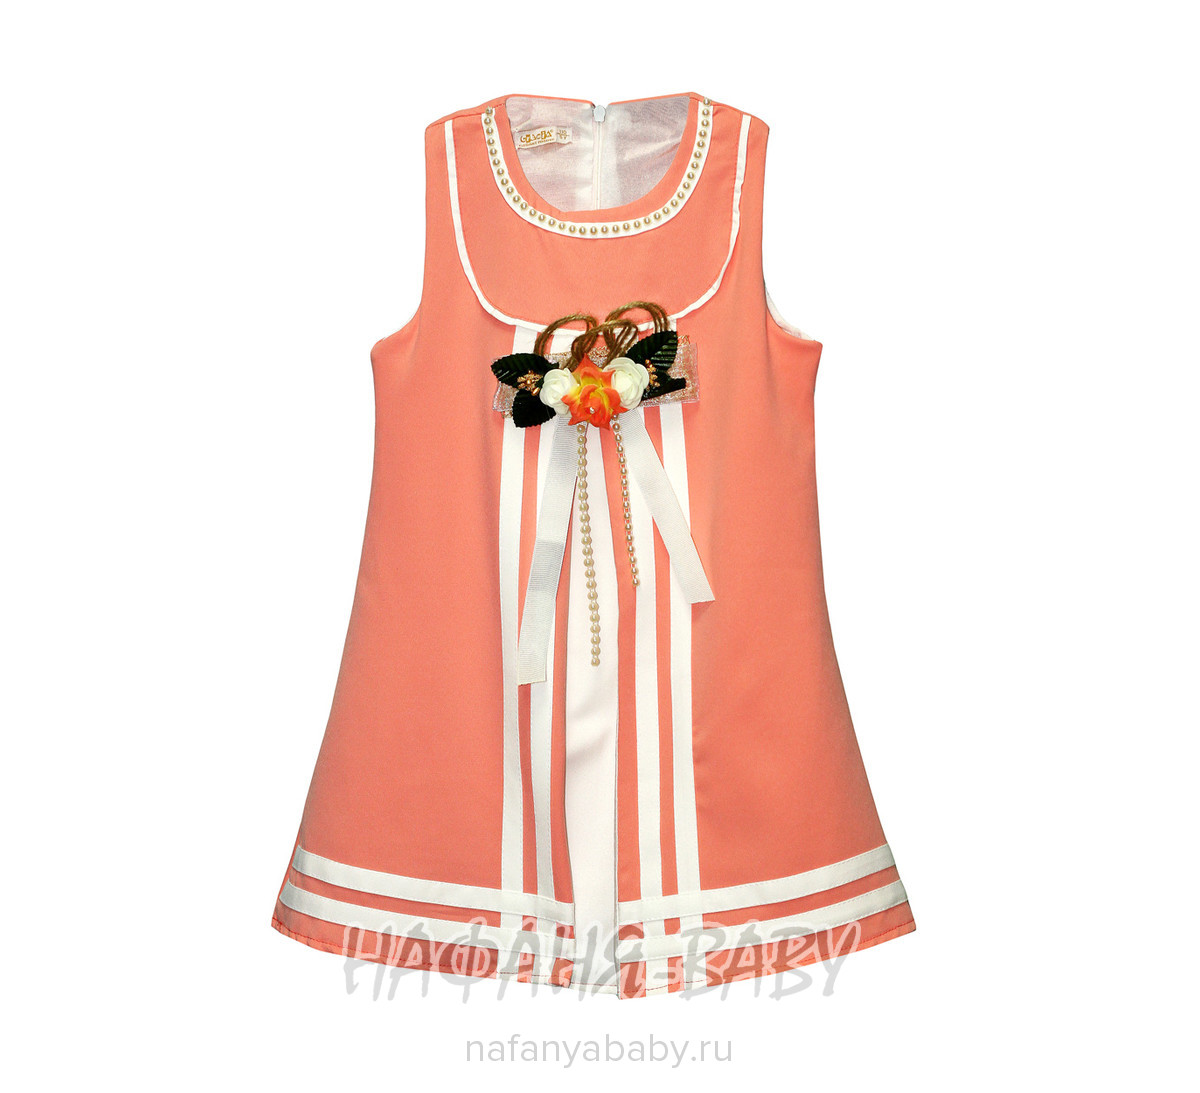 Детское платье CREMIX арт: 0790, 5-9 лет, цвет персиковый, оптом Турция